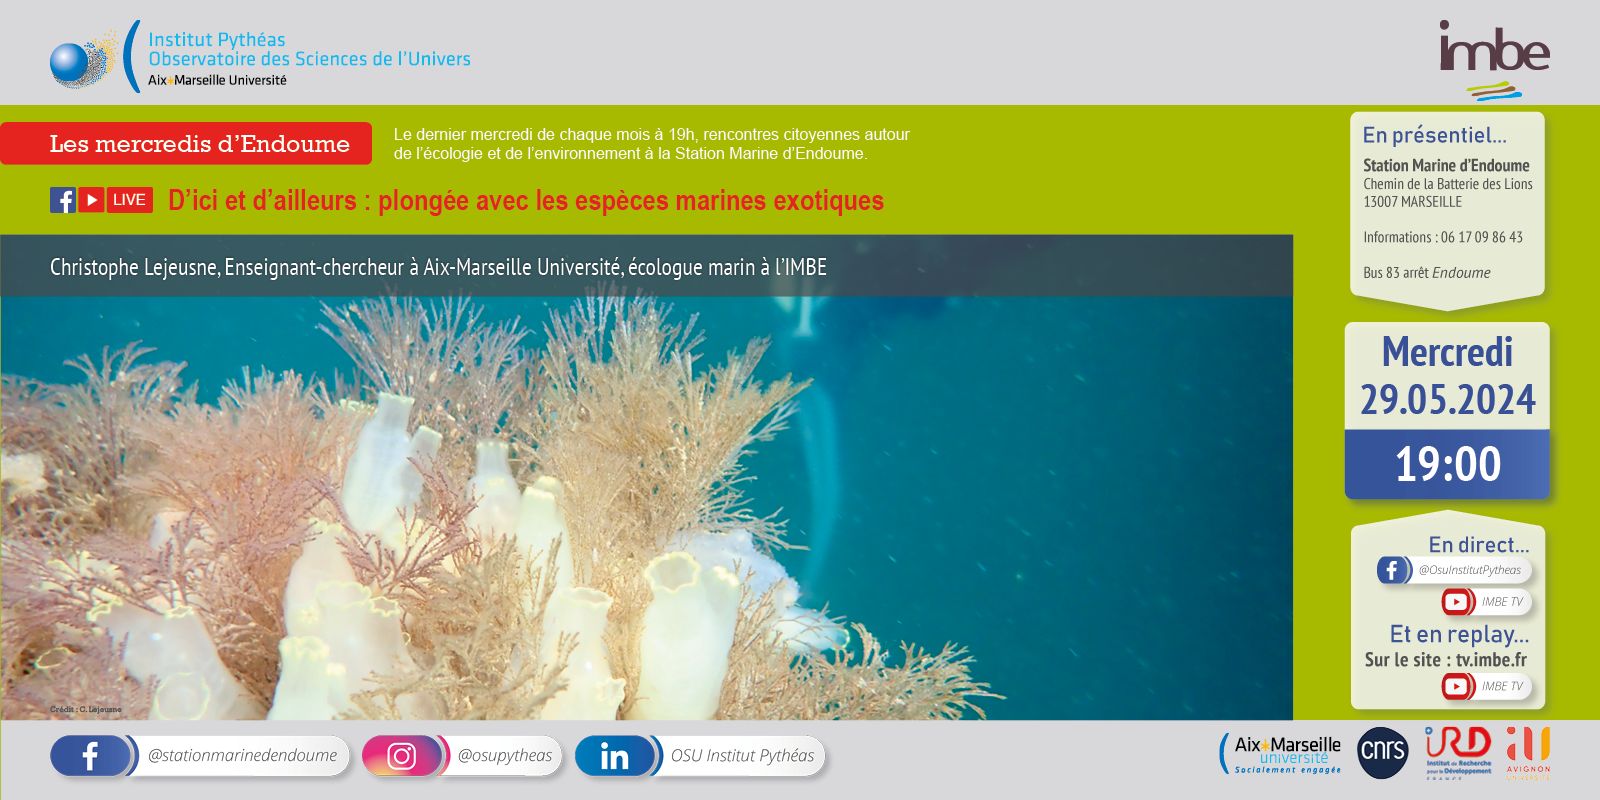 Les mercredis d'Endoume : D’ici et d’ailleurs : plongée avec les espèces marines exotiques